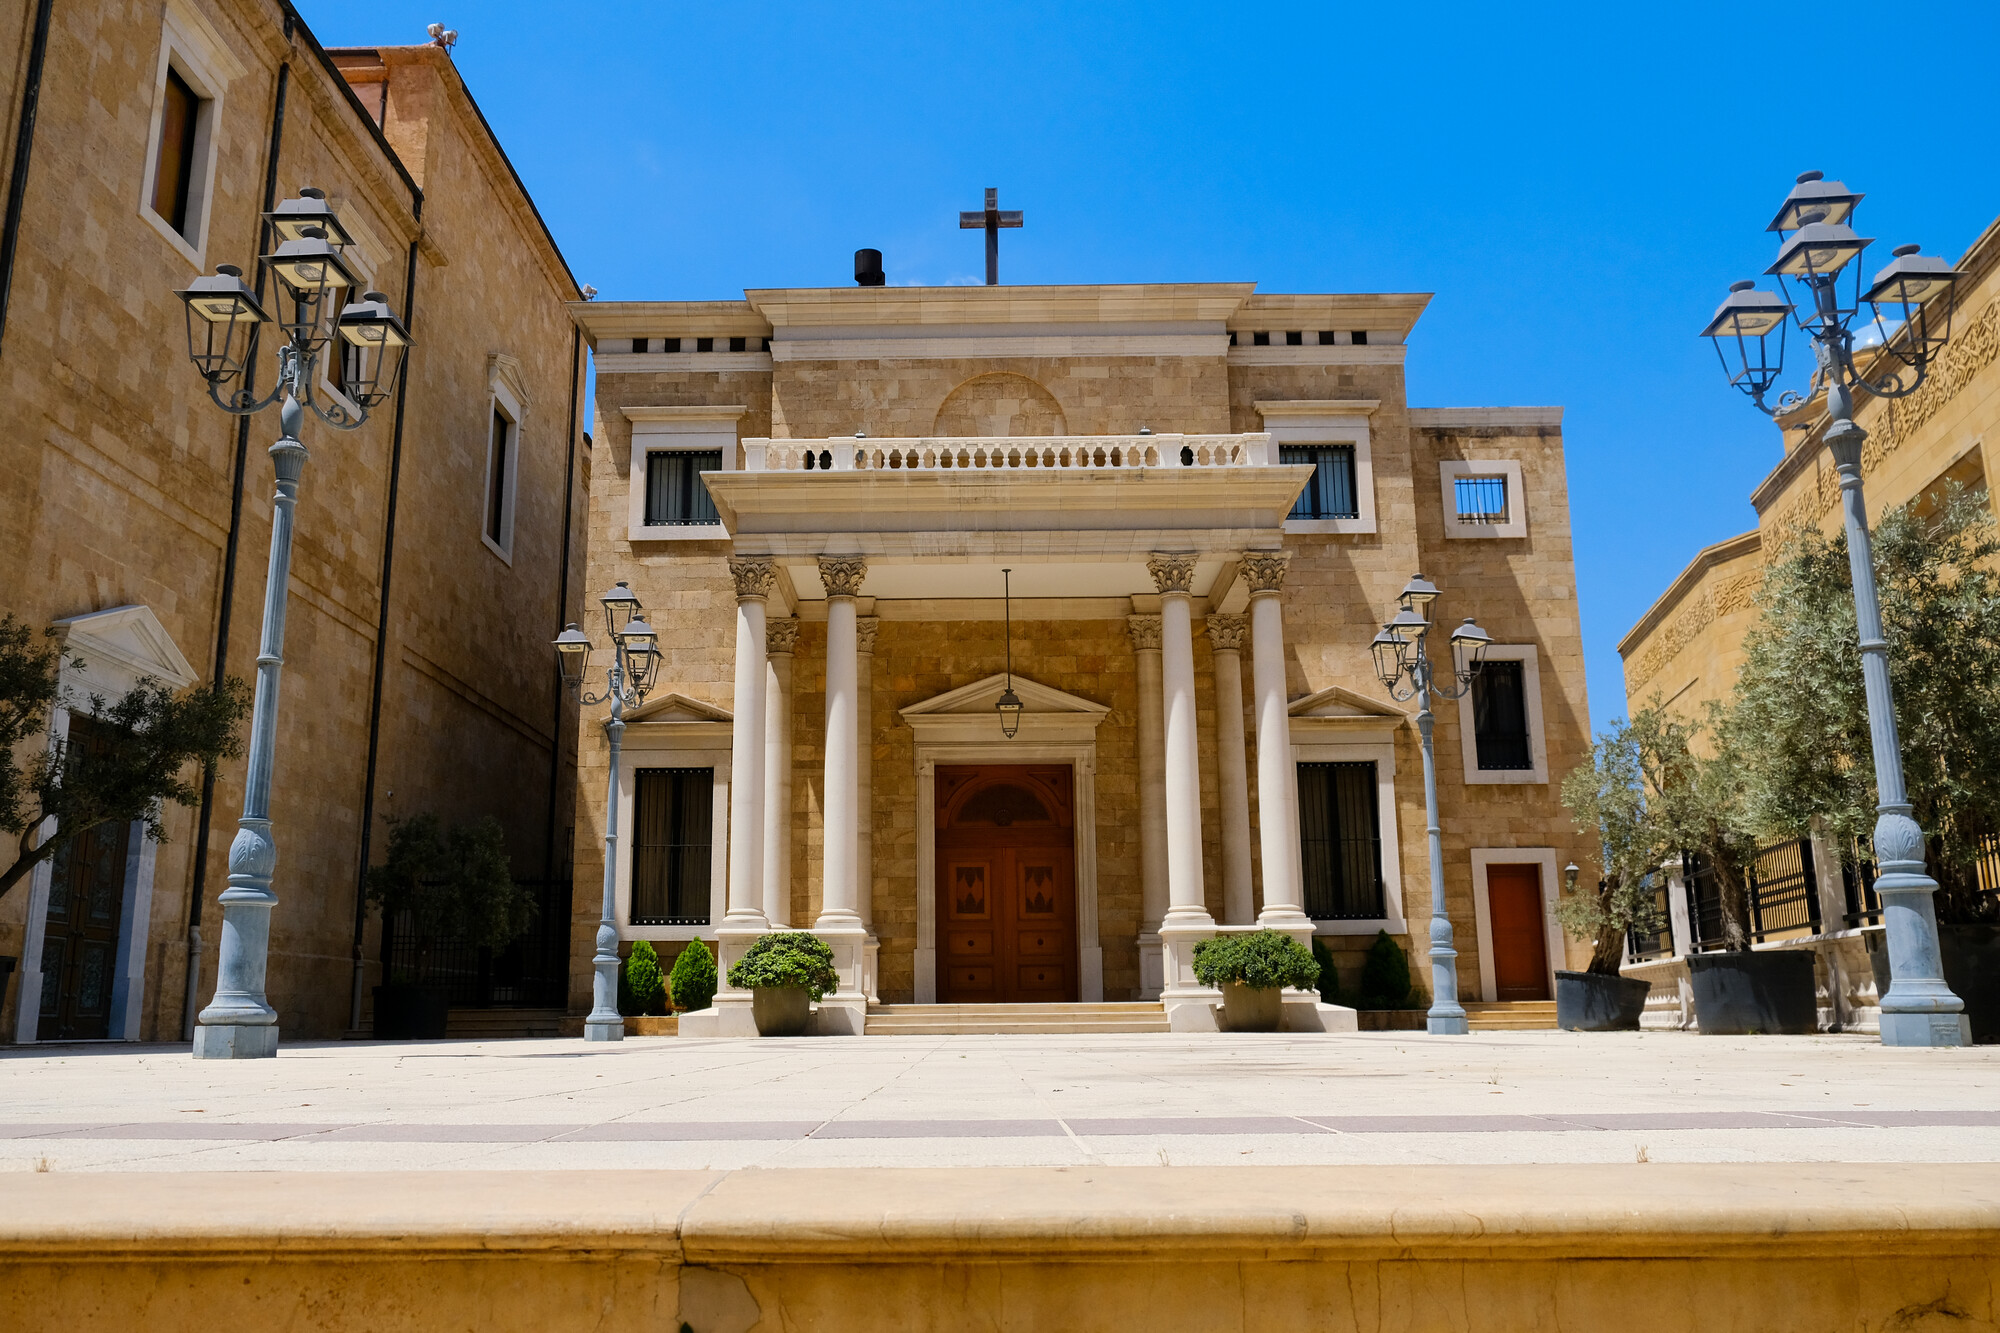 A church in Lebanon